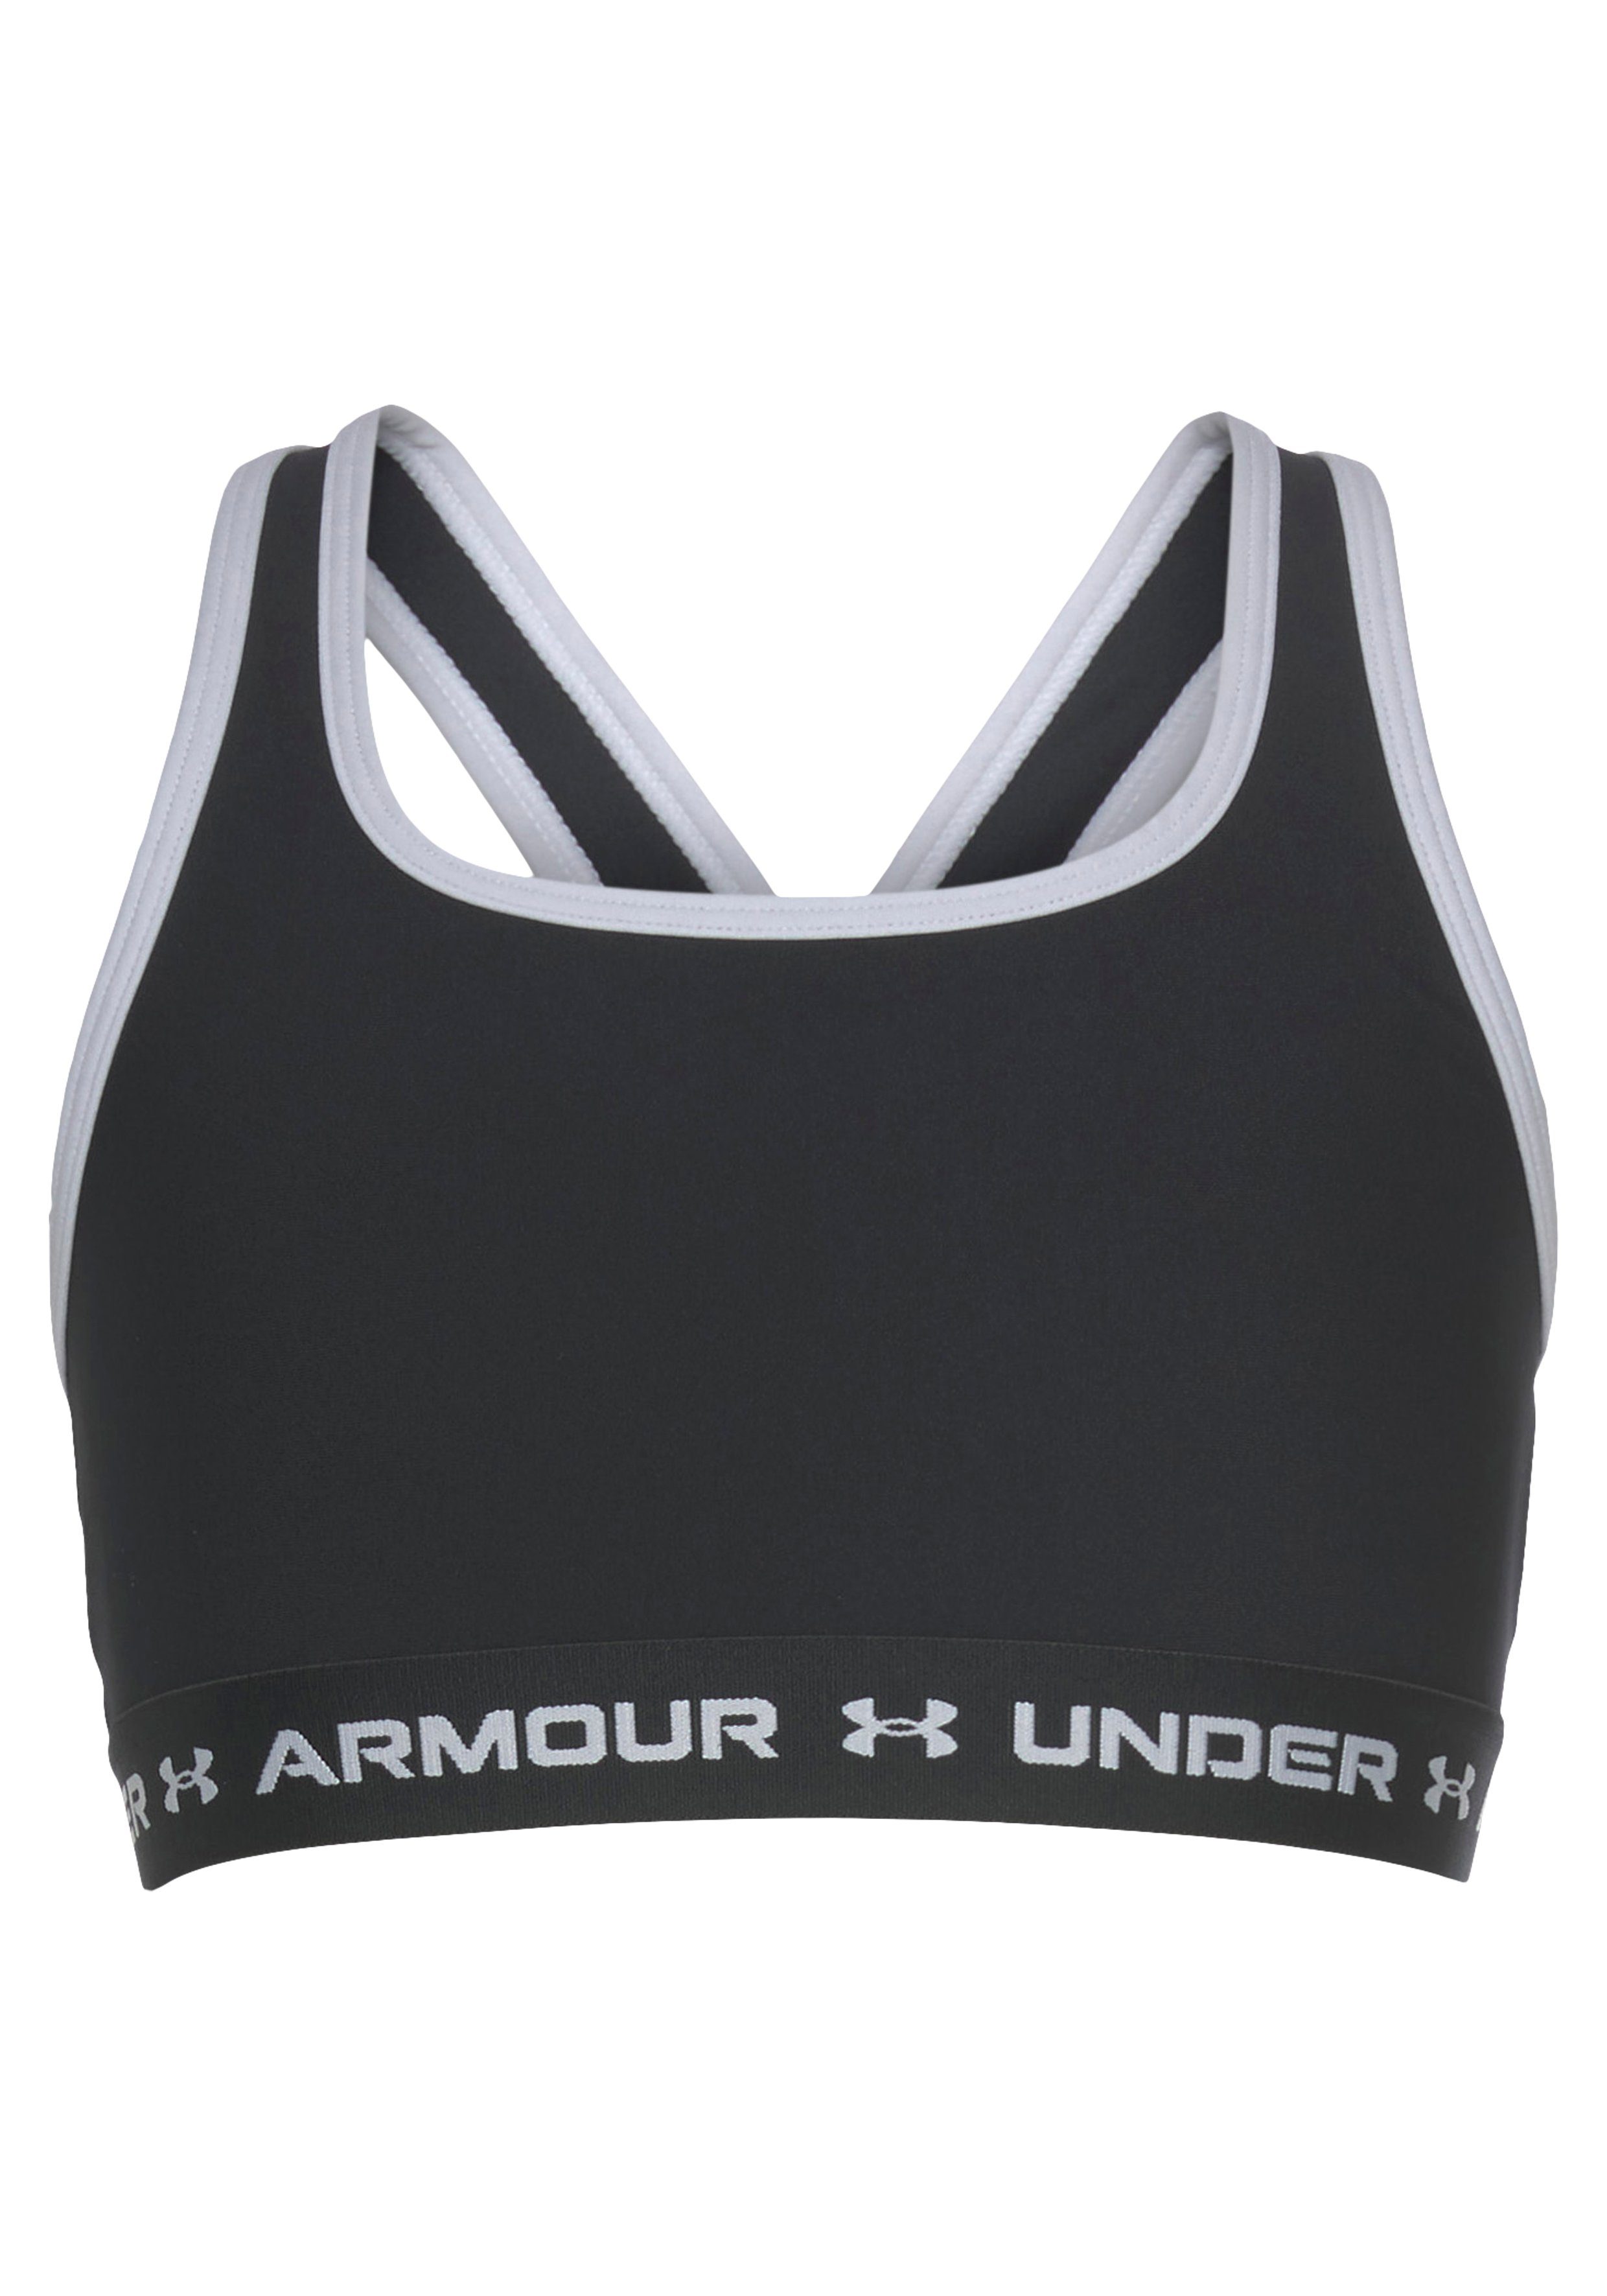 Armour® Under Sporttop schwarz